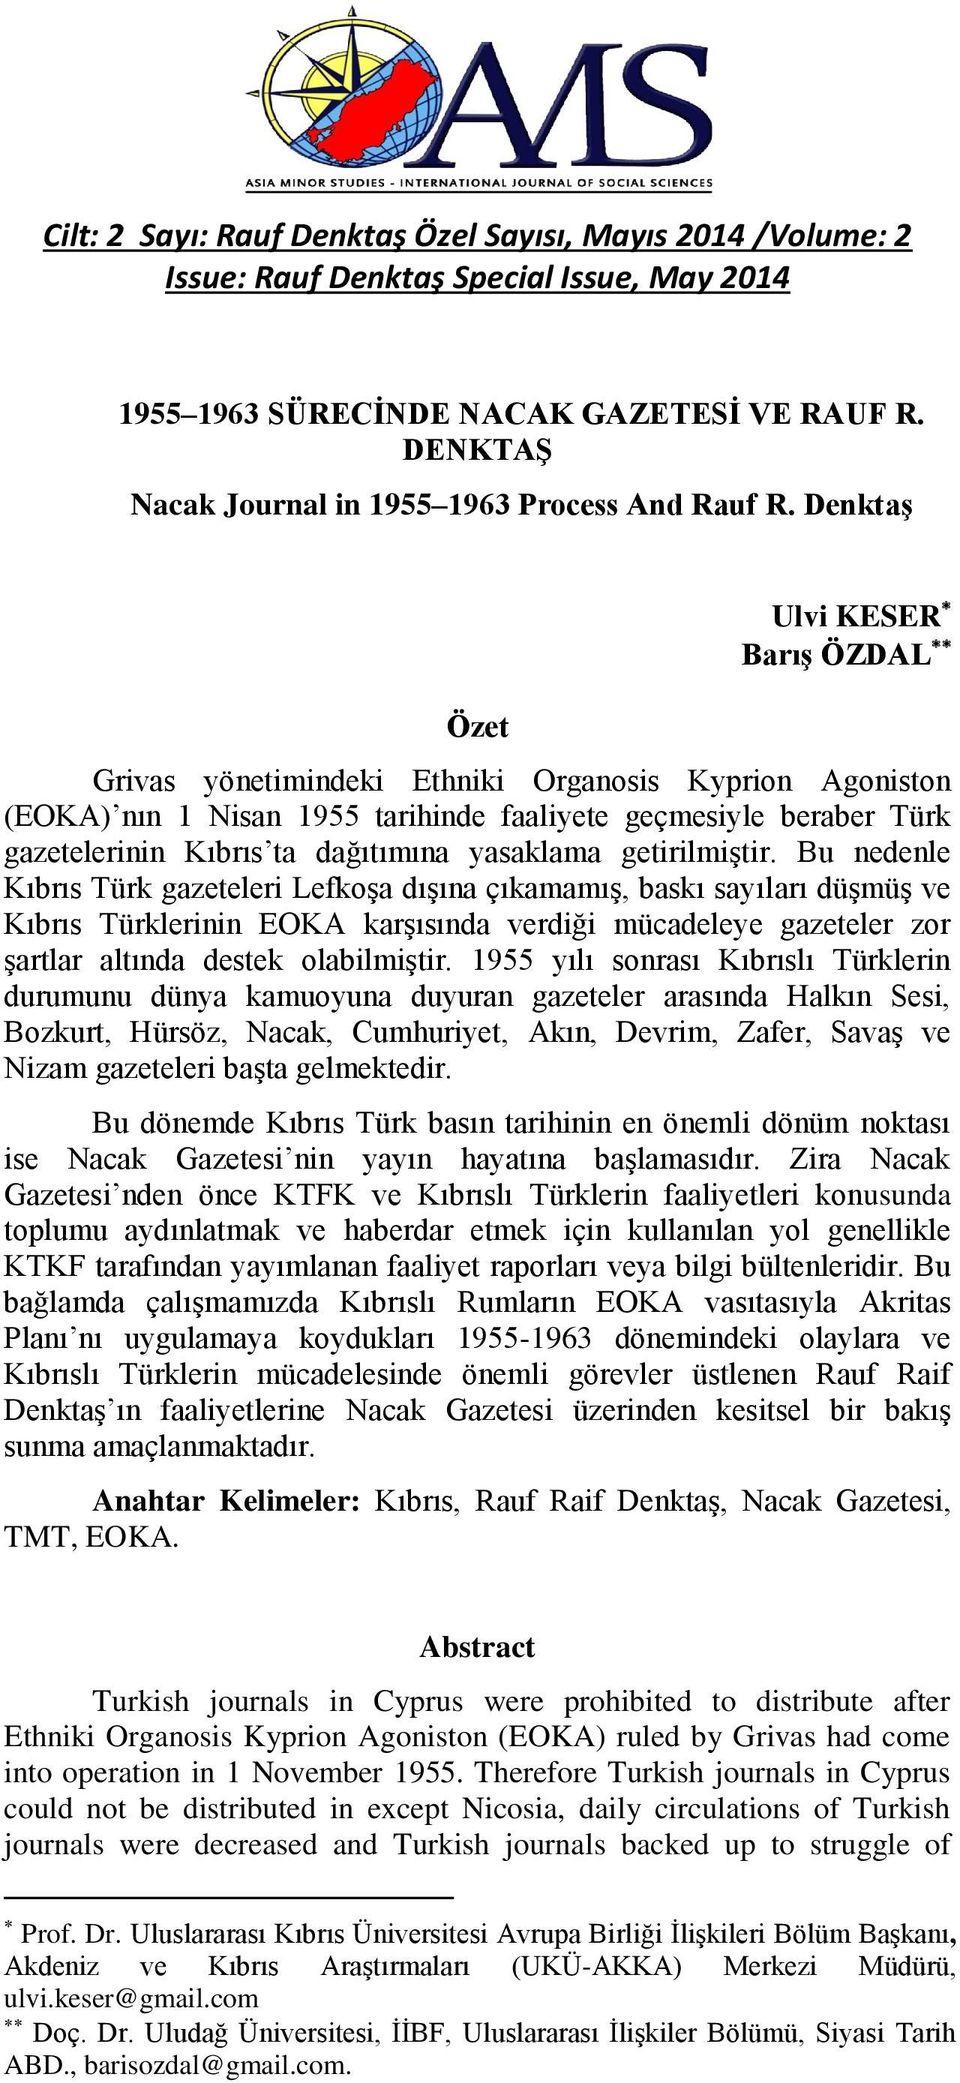 Denktaş Özet Ulvi KESER Barış ÖZDAL Grivas yönetimindeki Ethniki Organosis Kyprion Agoniston (EOKA) nın 1 Nisan 1955 tarihinde faaliyete geçmesiyle beraber Türk gazetelerinin Kıbrıs ta dağıtımına